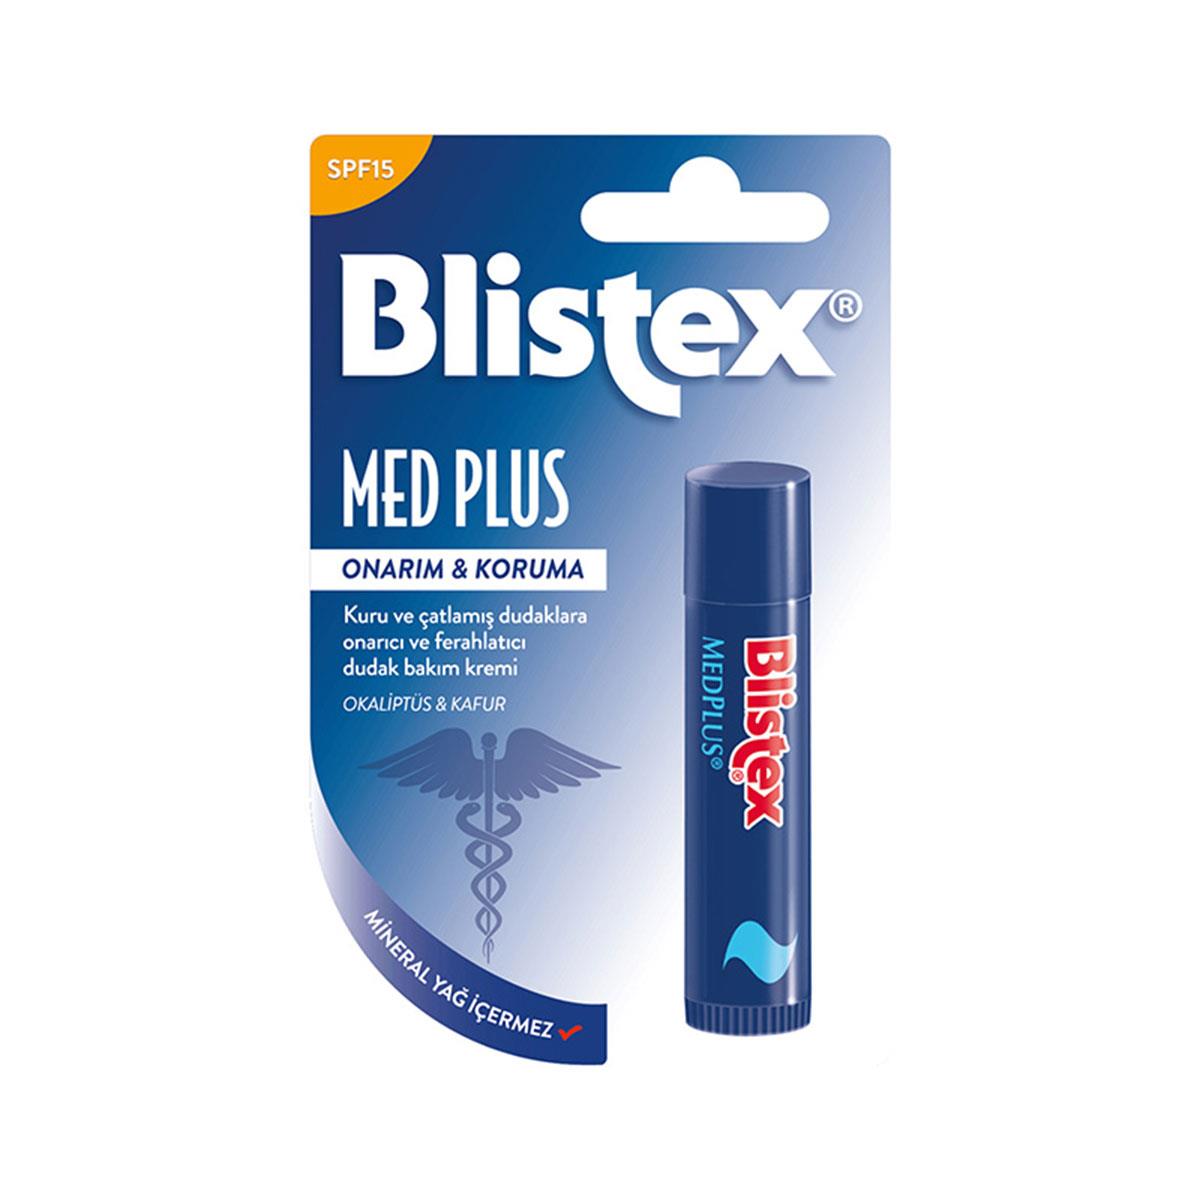 Blistex MedPlus SPF15 Kuru ve Çatlamış Dudaklara Stick Dudak Bakım Kremi  4.25 ml - Daffne